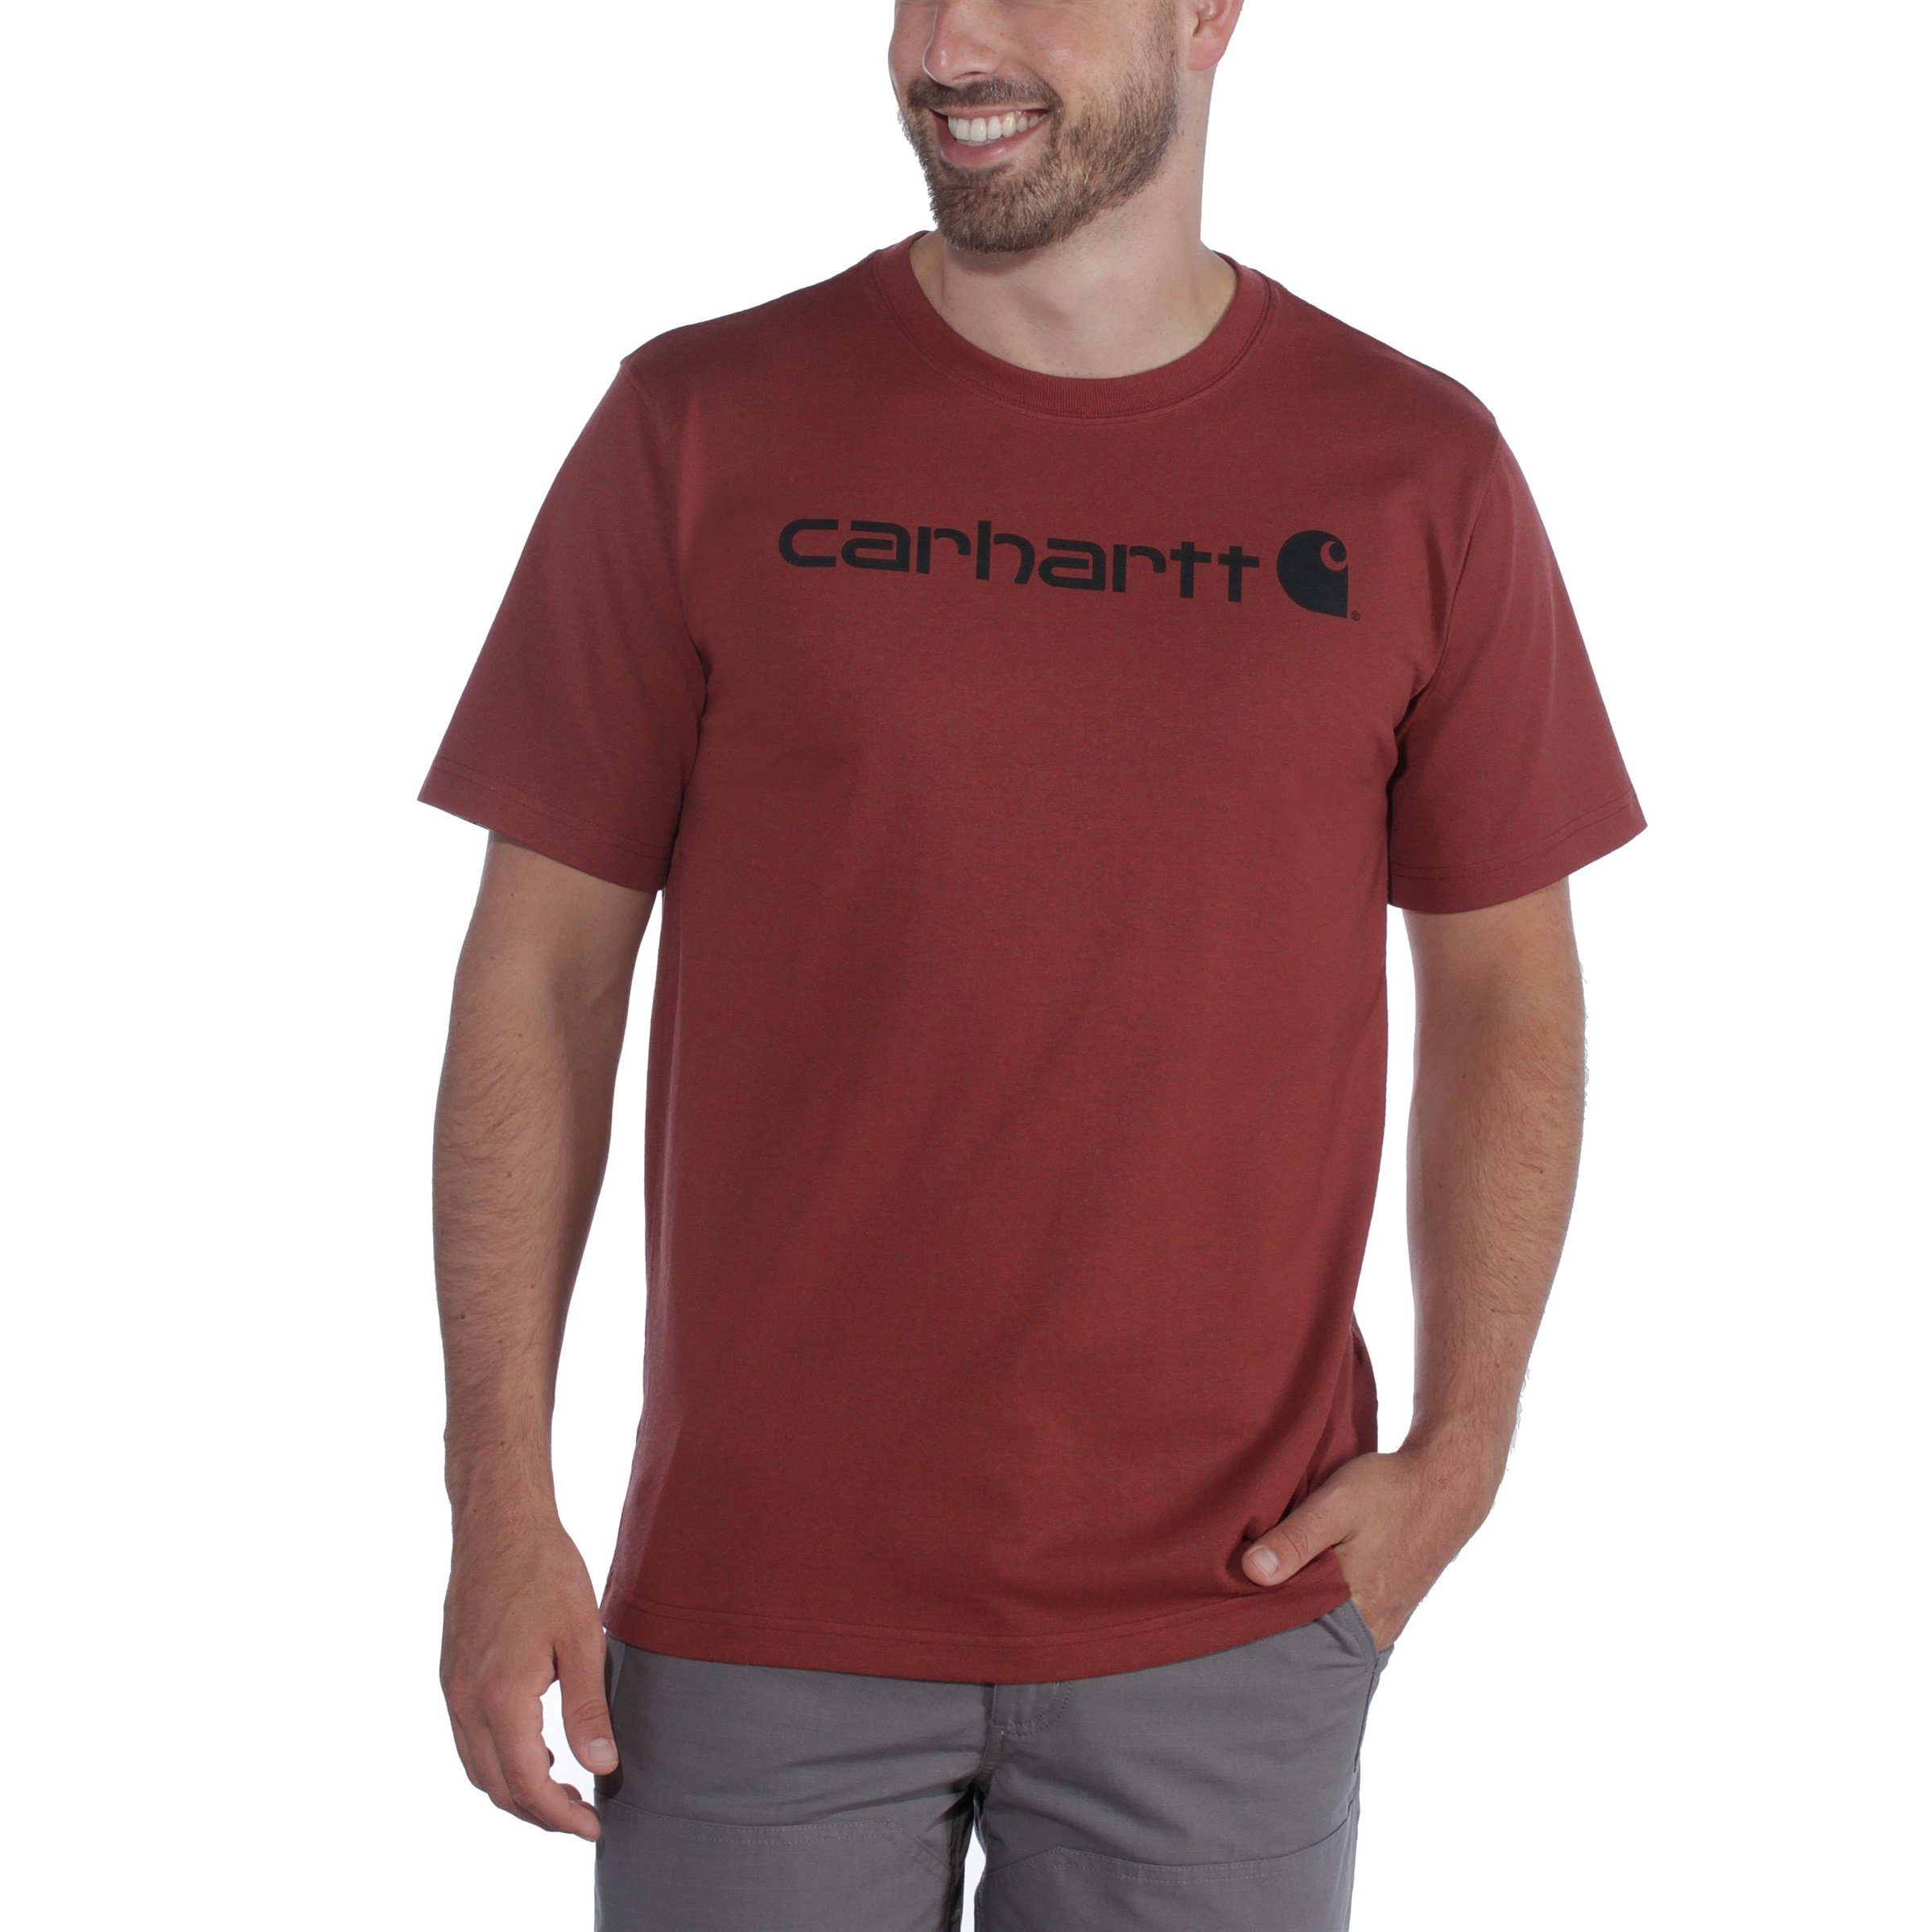 Fit Carhartt T-Shirt T-Shirt grey Short-Sleeve Carhartt Logo Herren Relaxed Heavyweight heather Adult Graphic